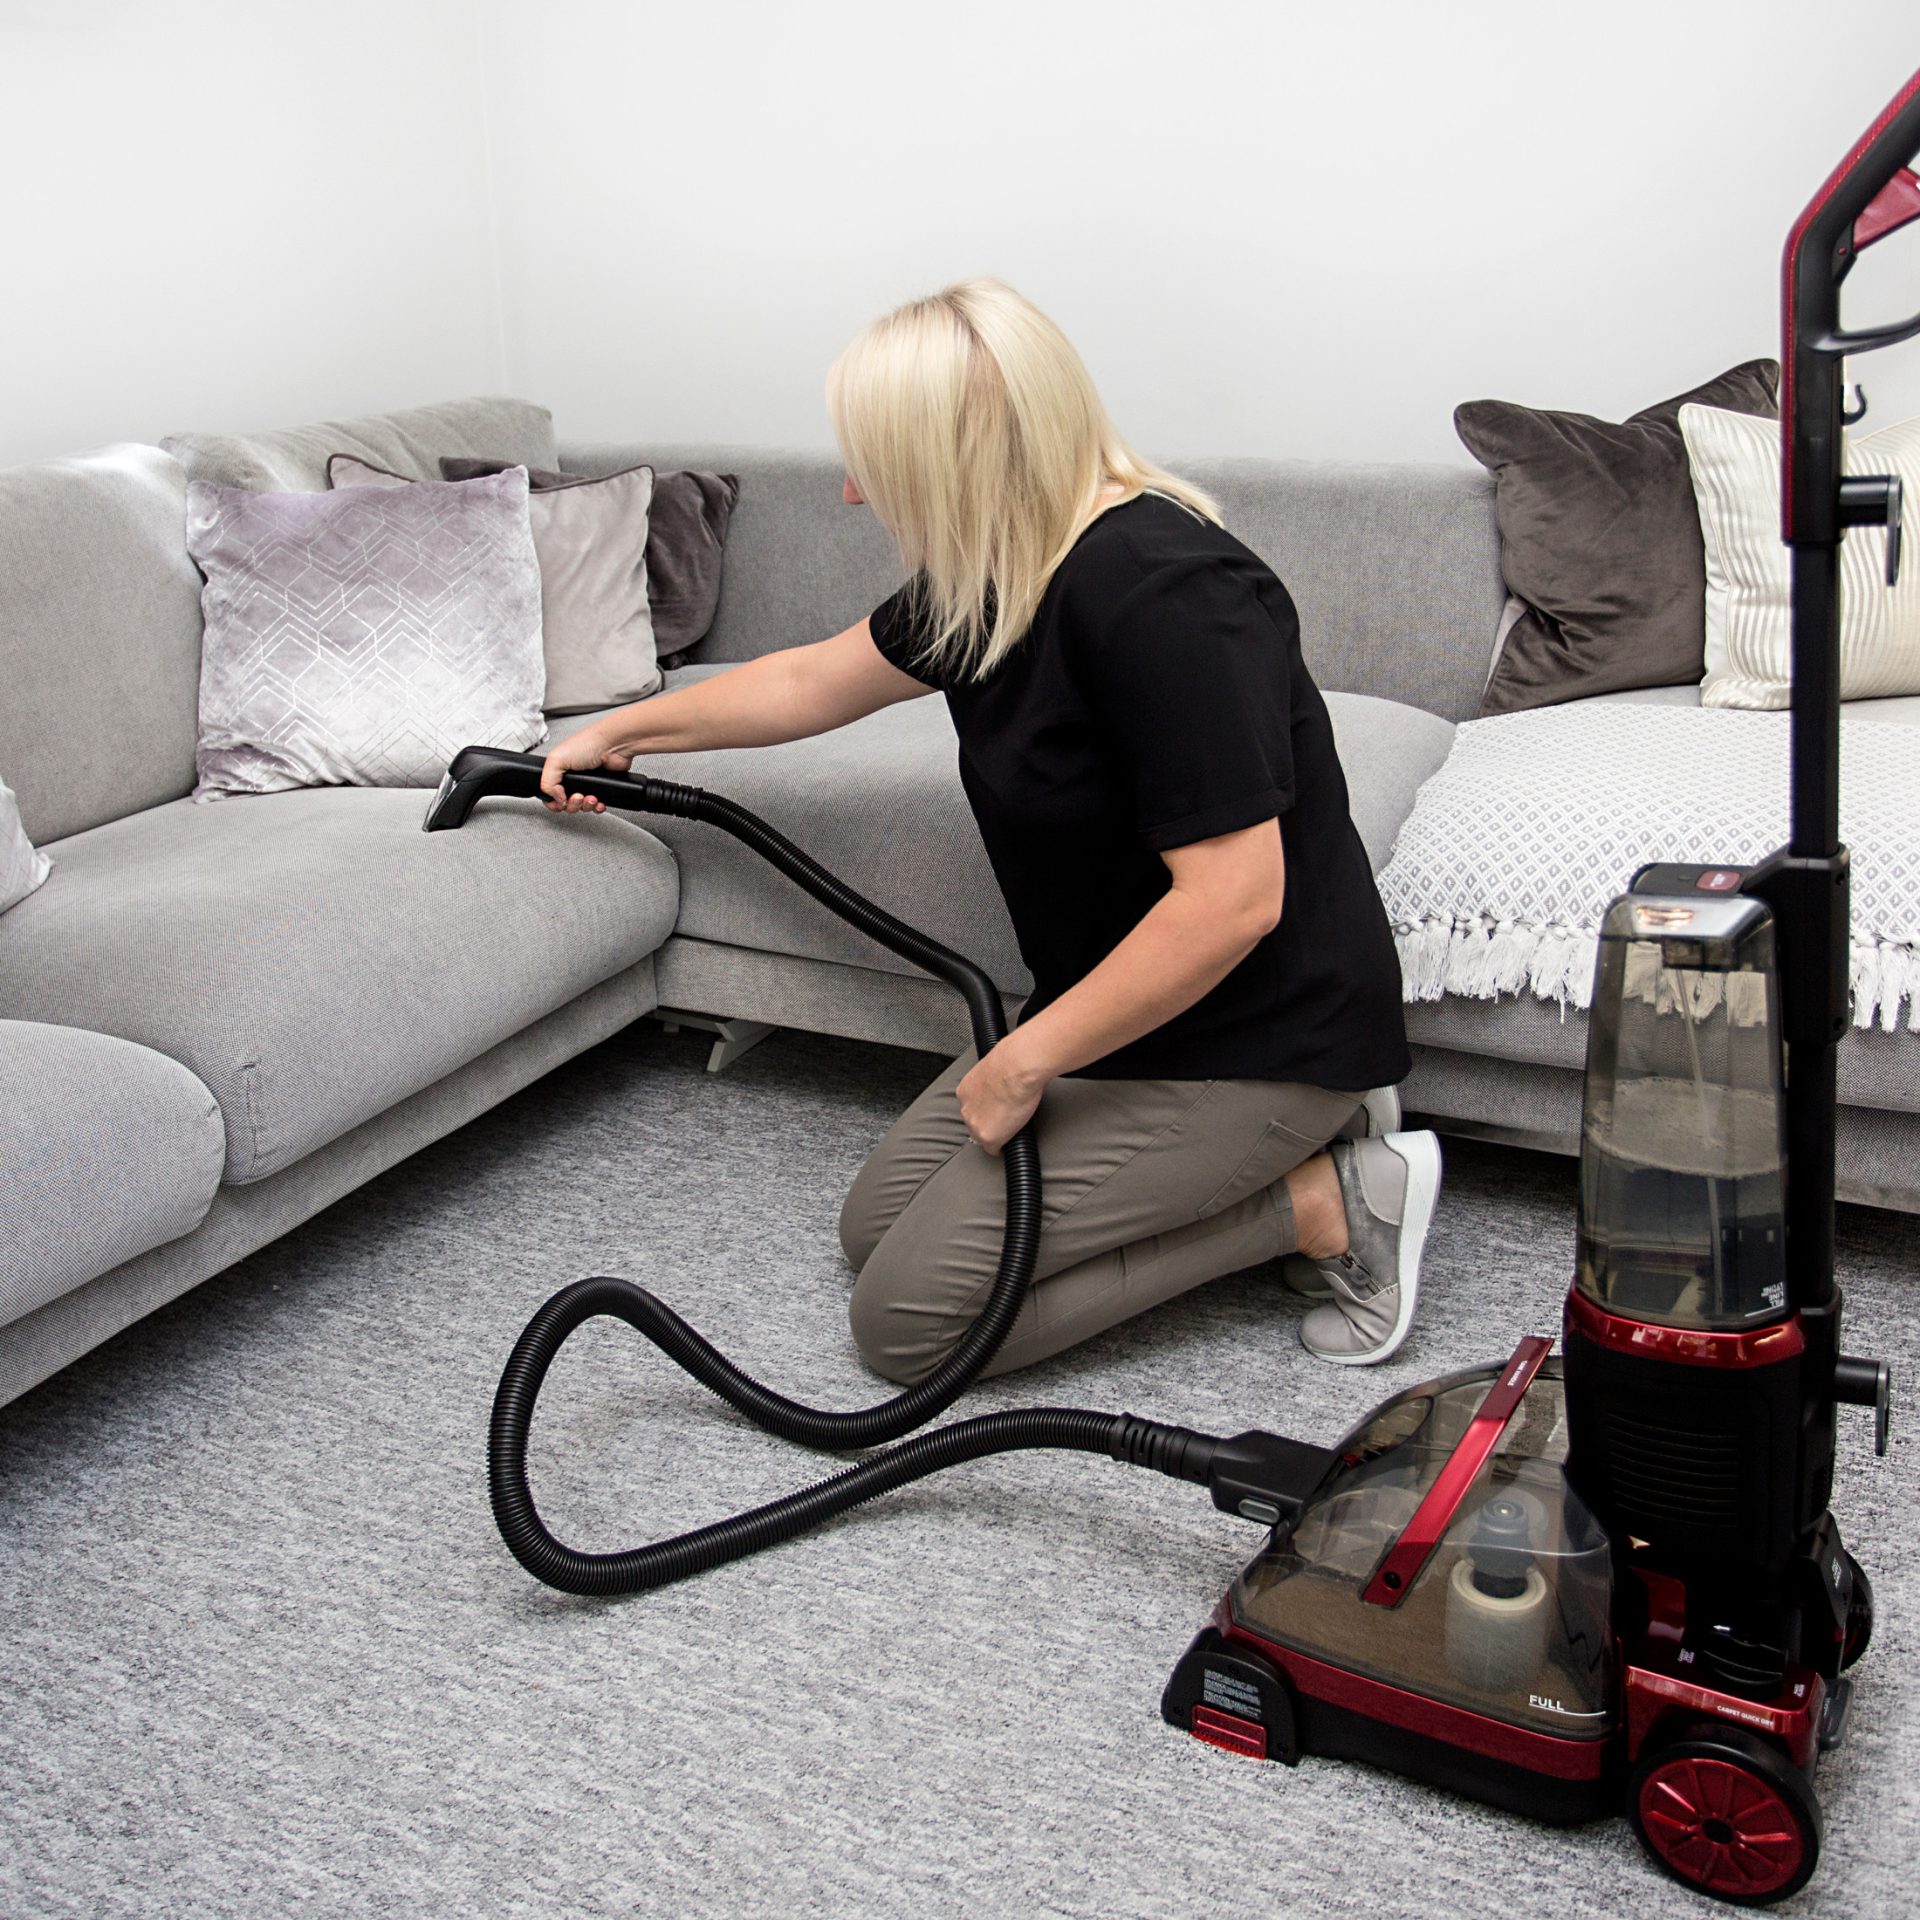 FlexClean All-In-One Floor Cleaner: Clean Carpet & Hardwood Floor